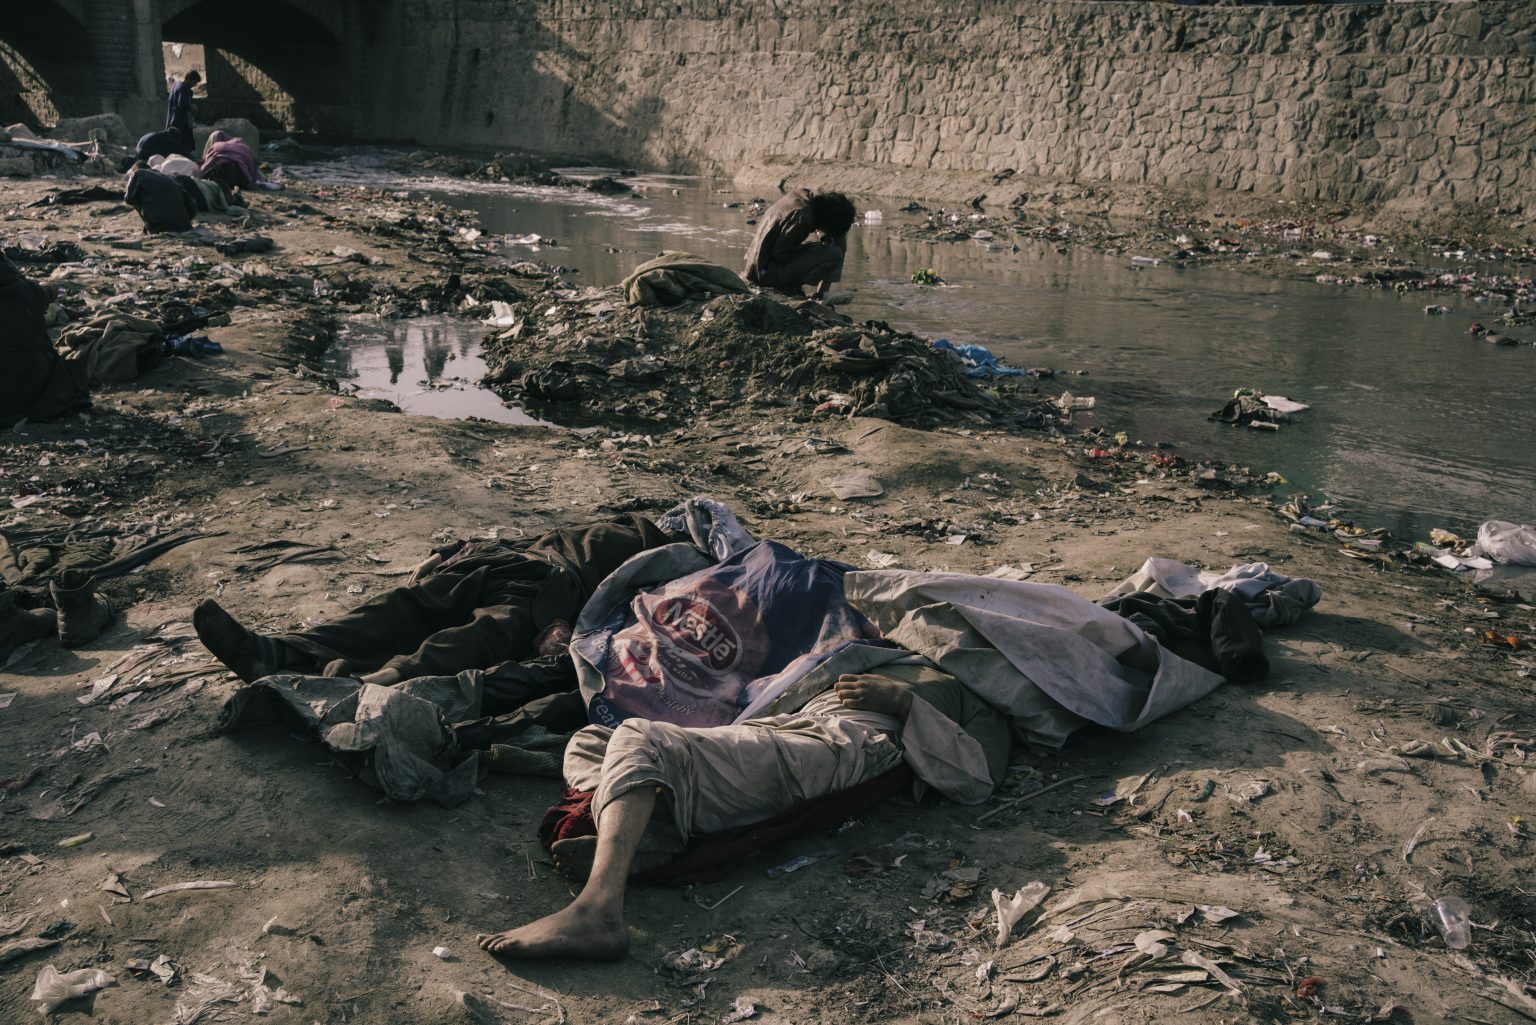 Kabul, Afghanistan, March 2022 - Three dead bodies are seen in an area near the river Kabul where lots of users gather and live. ><
Kabul, Afghanistan, marzo 2022 - I cadaveri di tre persone nei pressi del fiume Kabul, dove vivono e si riuniscono molti tossicodipendenti.